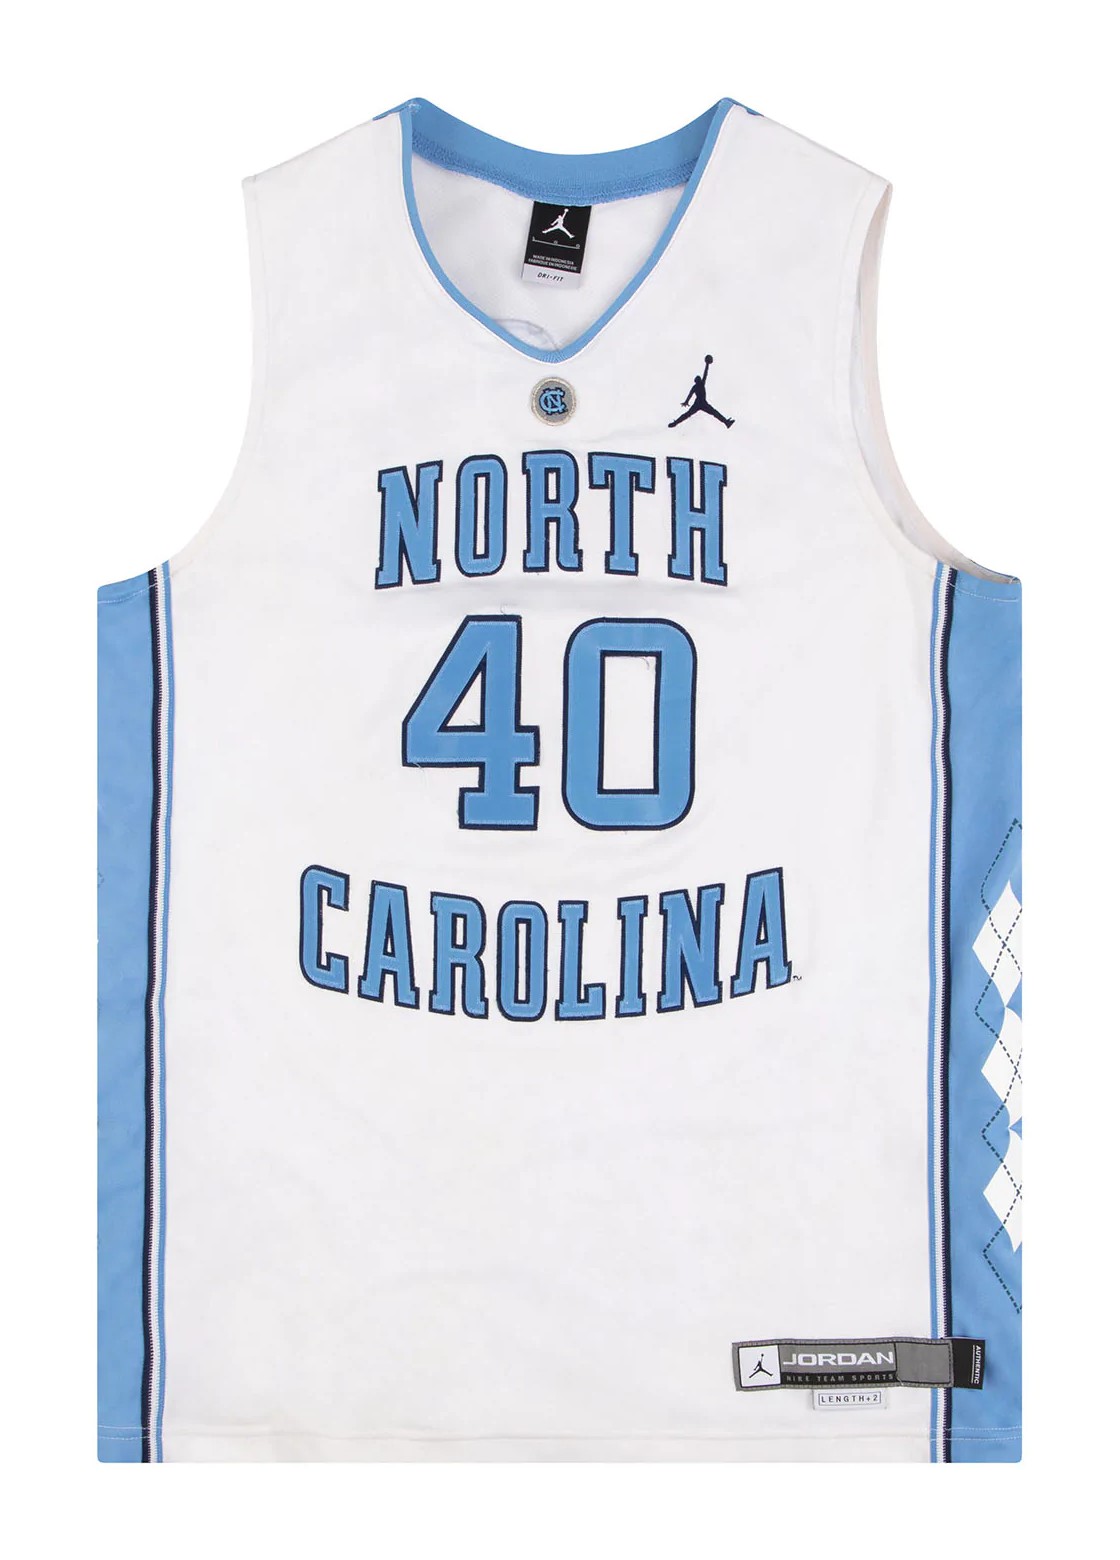 North Carolina Tar Heels jerseys